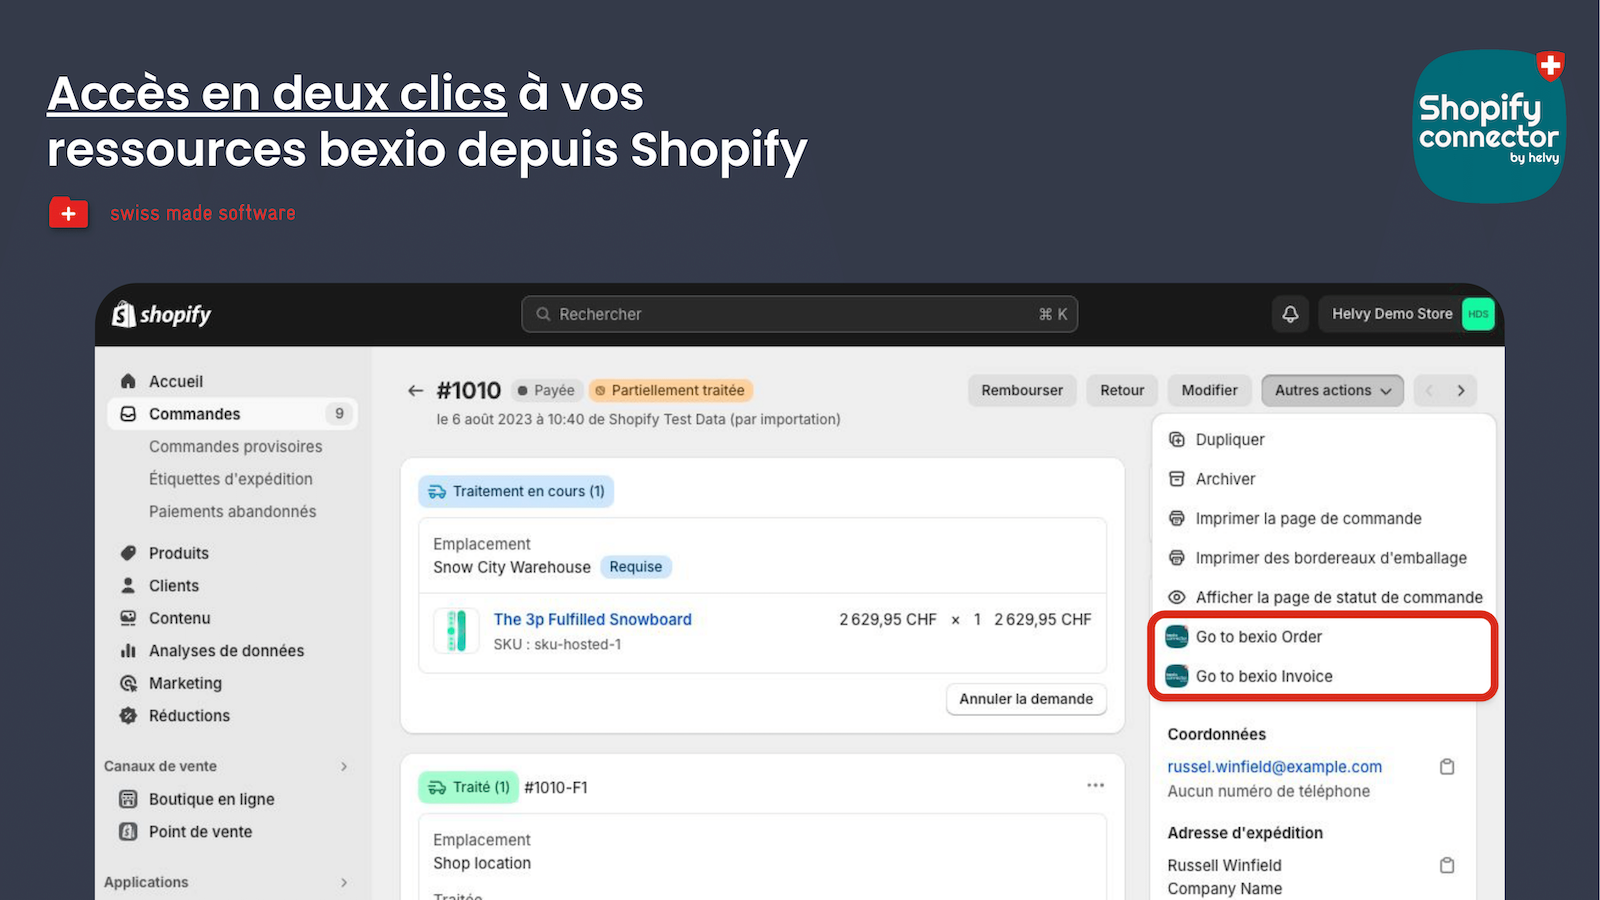 Accès en deux clics à vos ressources bexio depuis Shopify